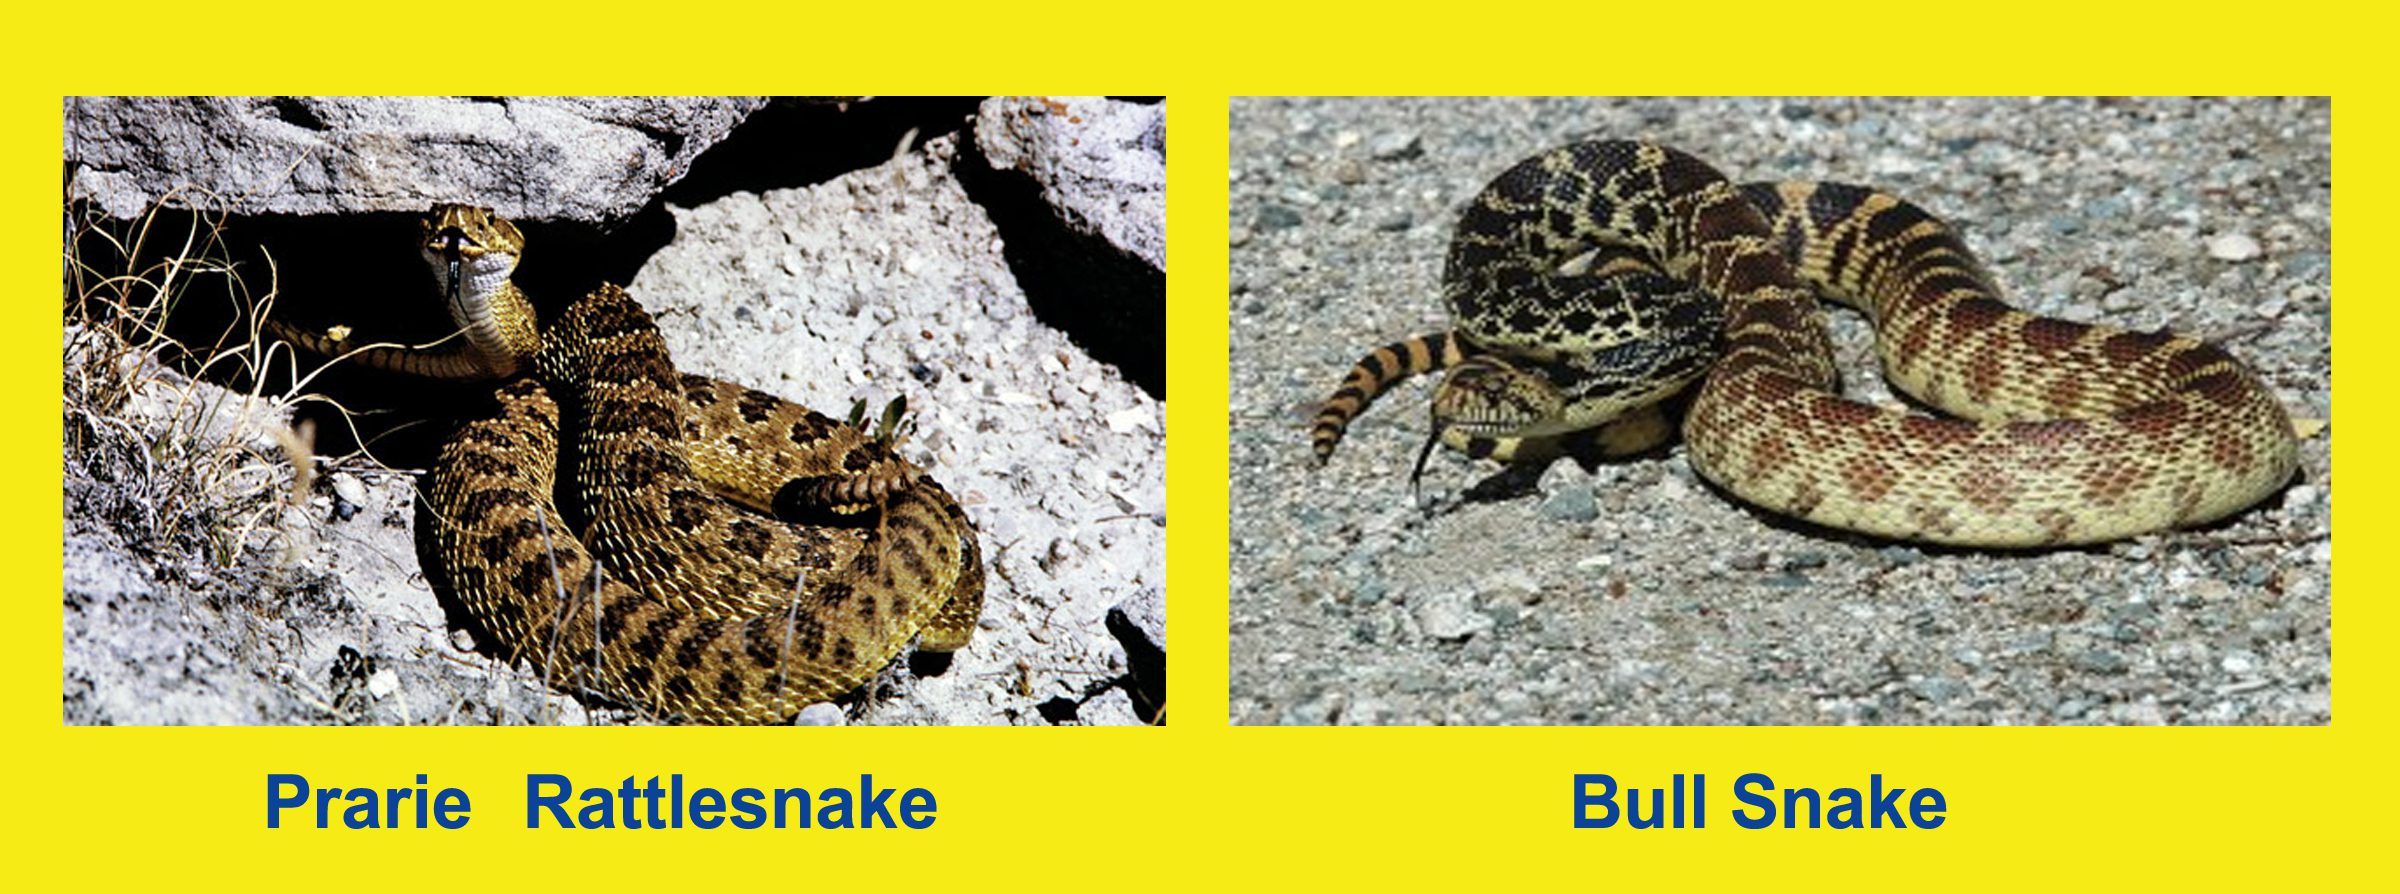 Rattlesnake-vs-Bull-Snake-identify-Pooper-Scooper-Boulder-Colorado.jpg